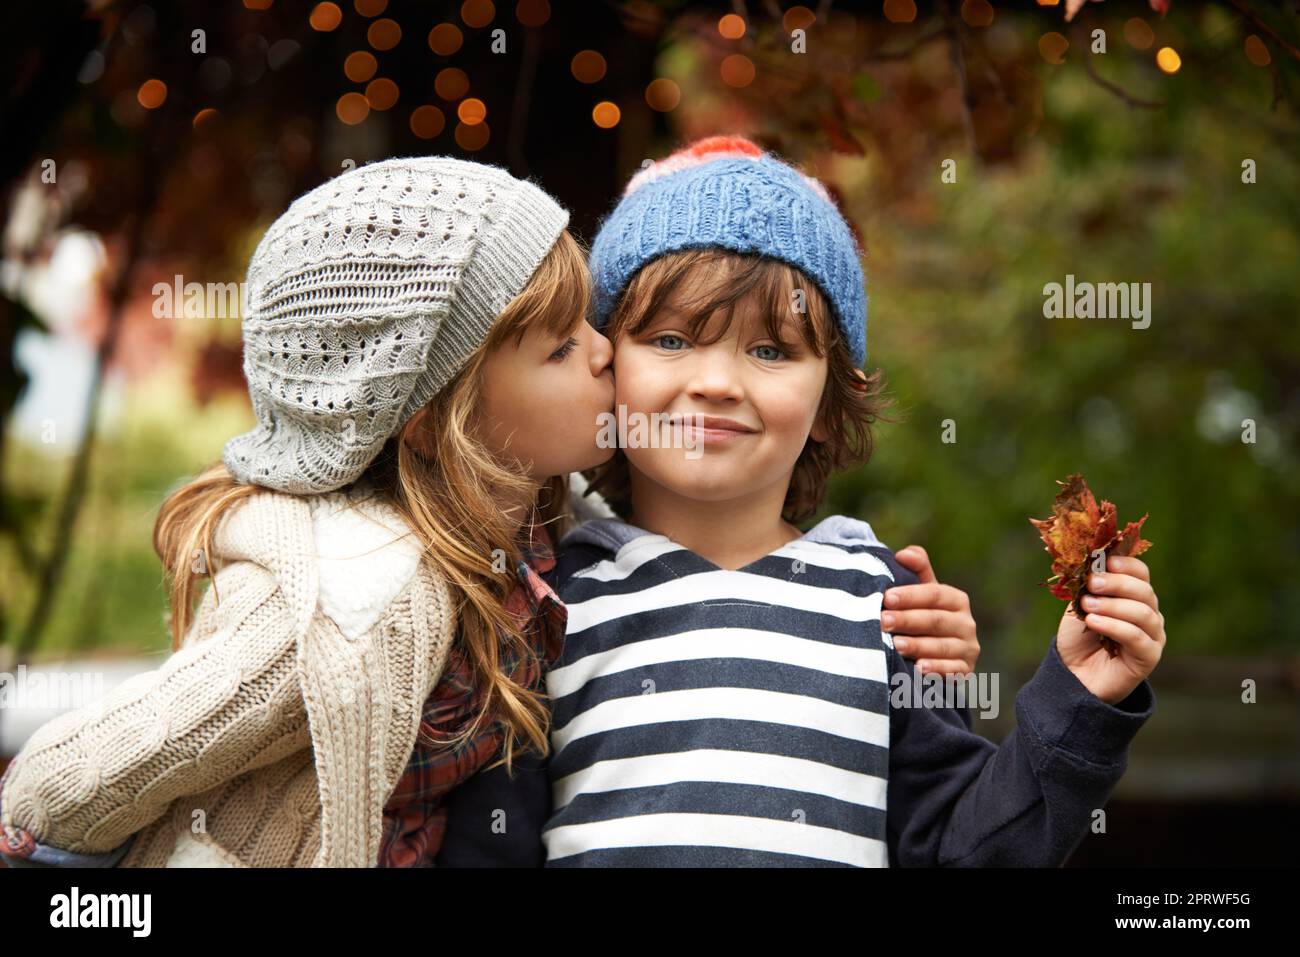 Pas de rivalité entre frères et sœurs ici. Une petite fille mignonne donnant à son frère un baiser sur la joue. Banque D'Images